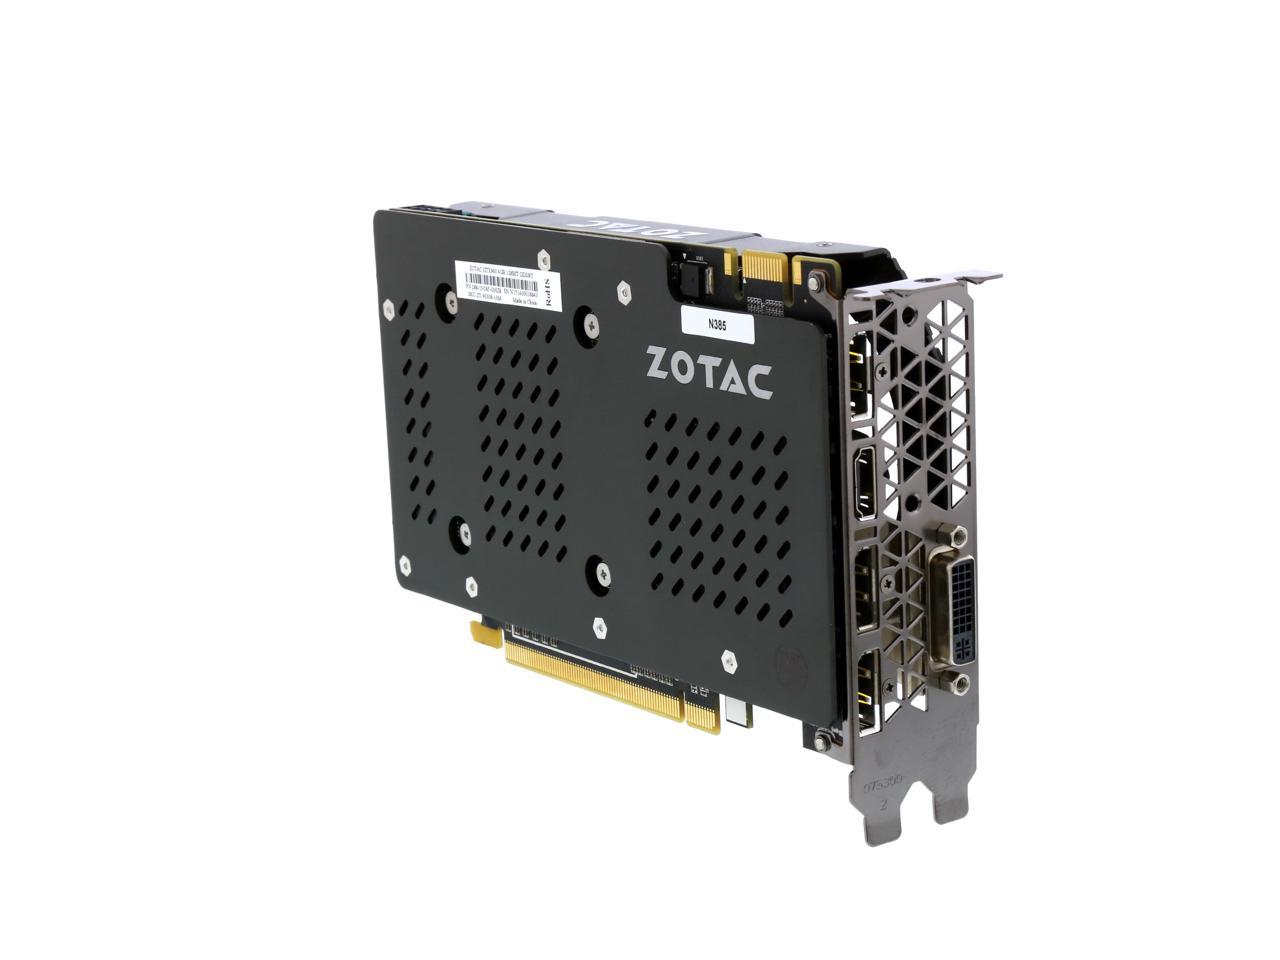 ZOTAC GeForce GTX 960 4G, ZT-90308-10M - Newegg.com